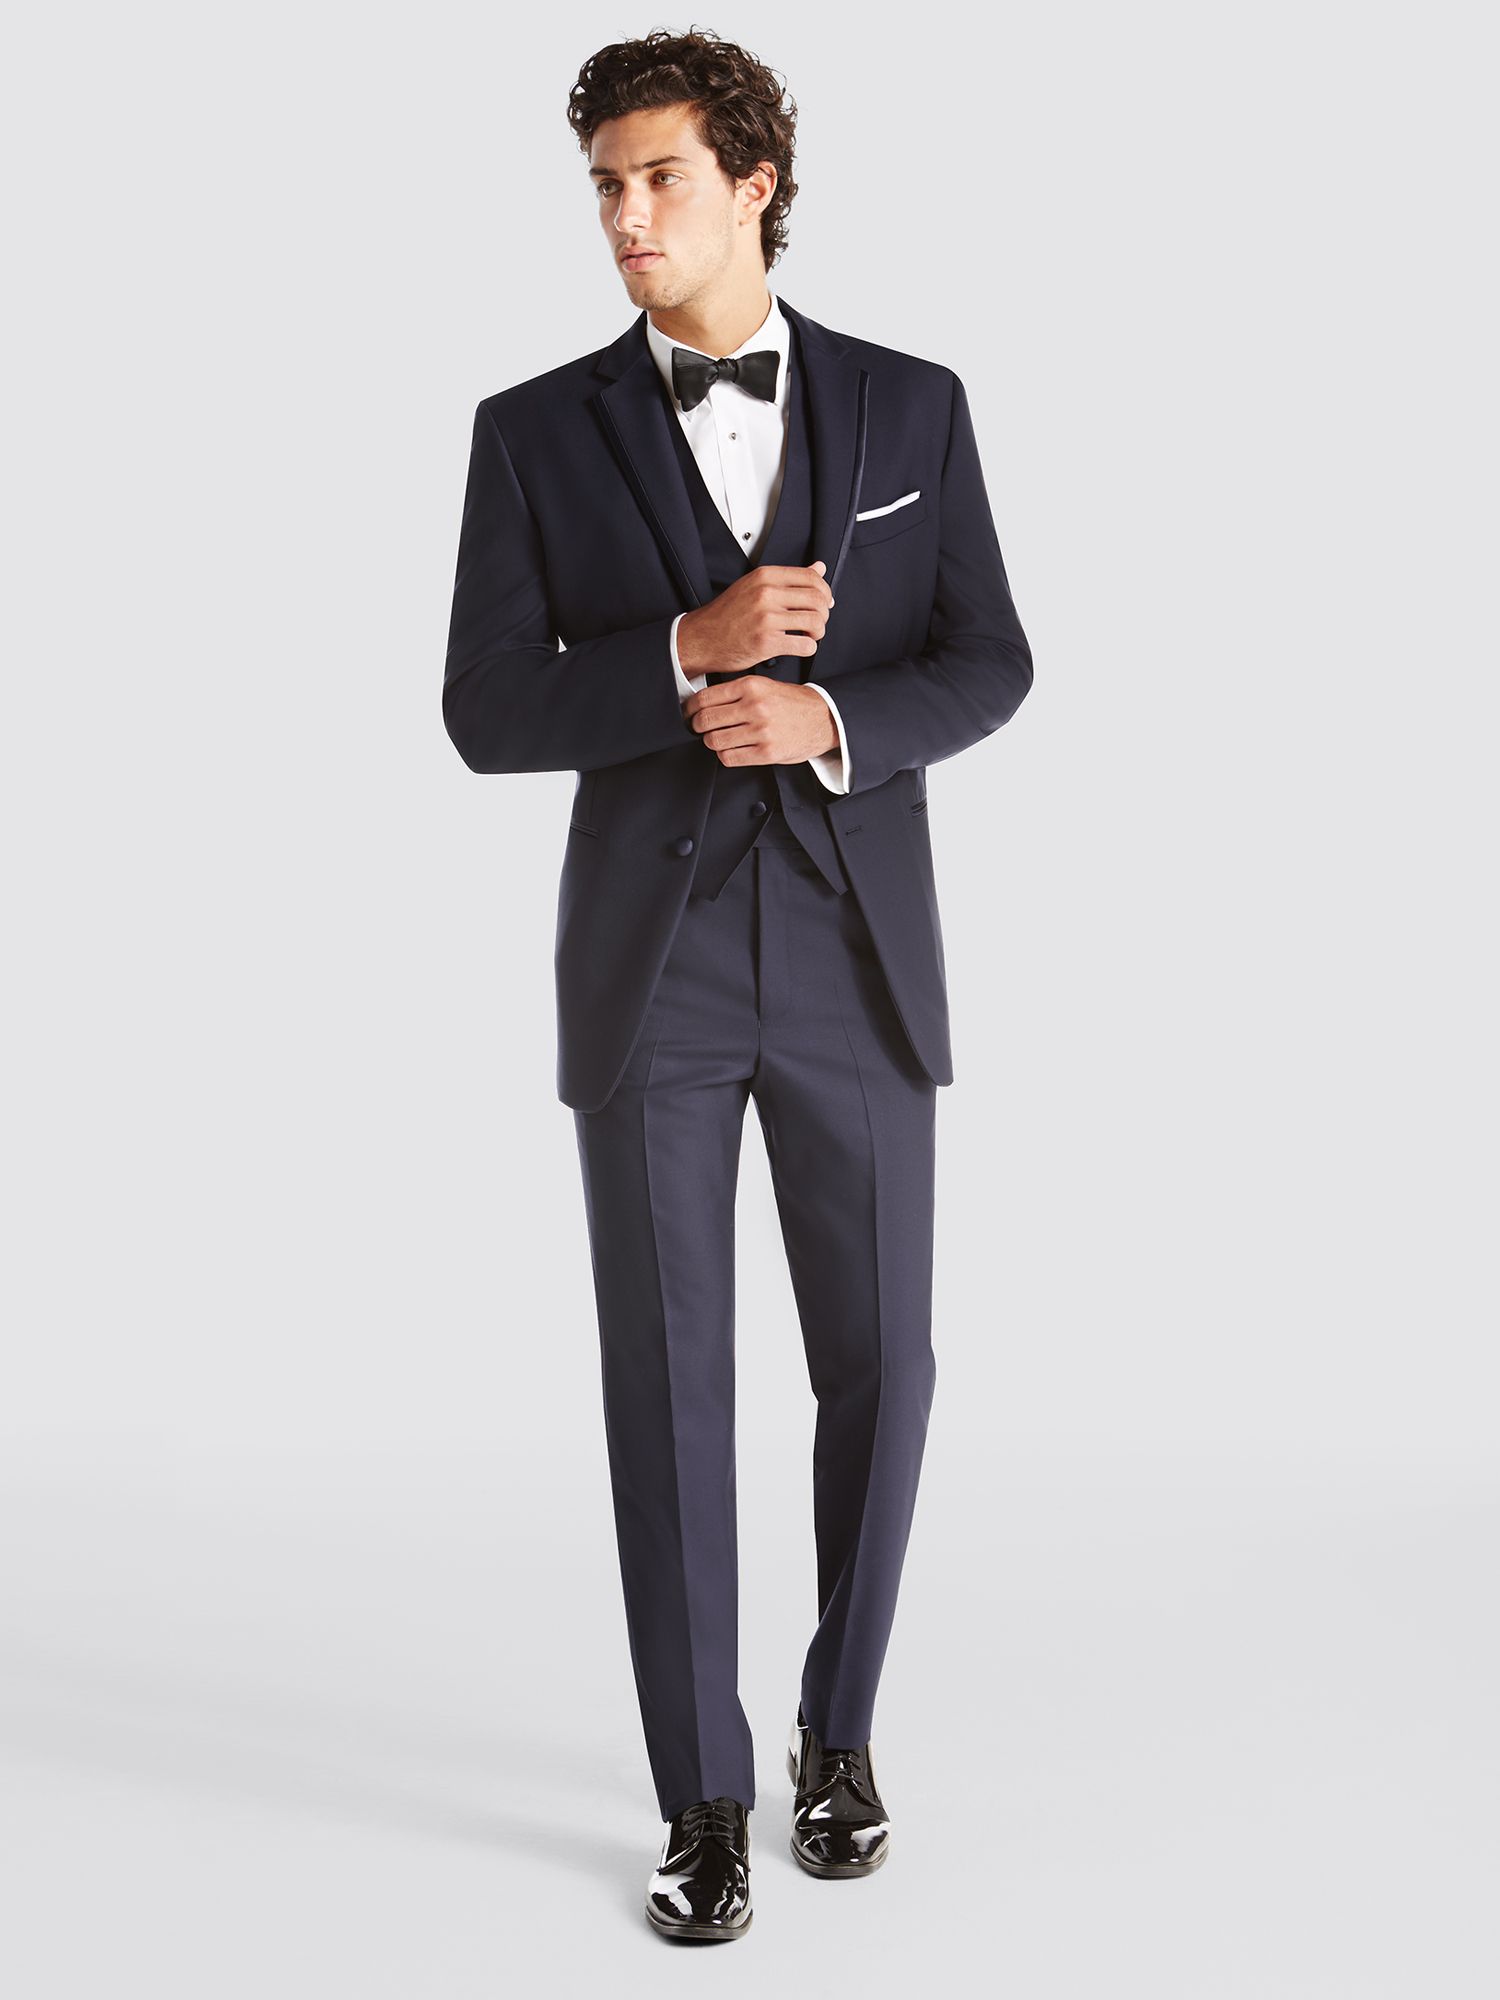 Prom Tuxedo Rental Styles, Prom Suit Looks | Men's Wearhouse